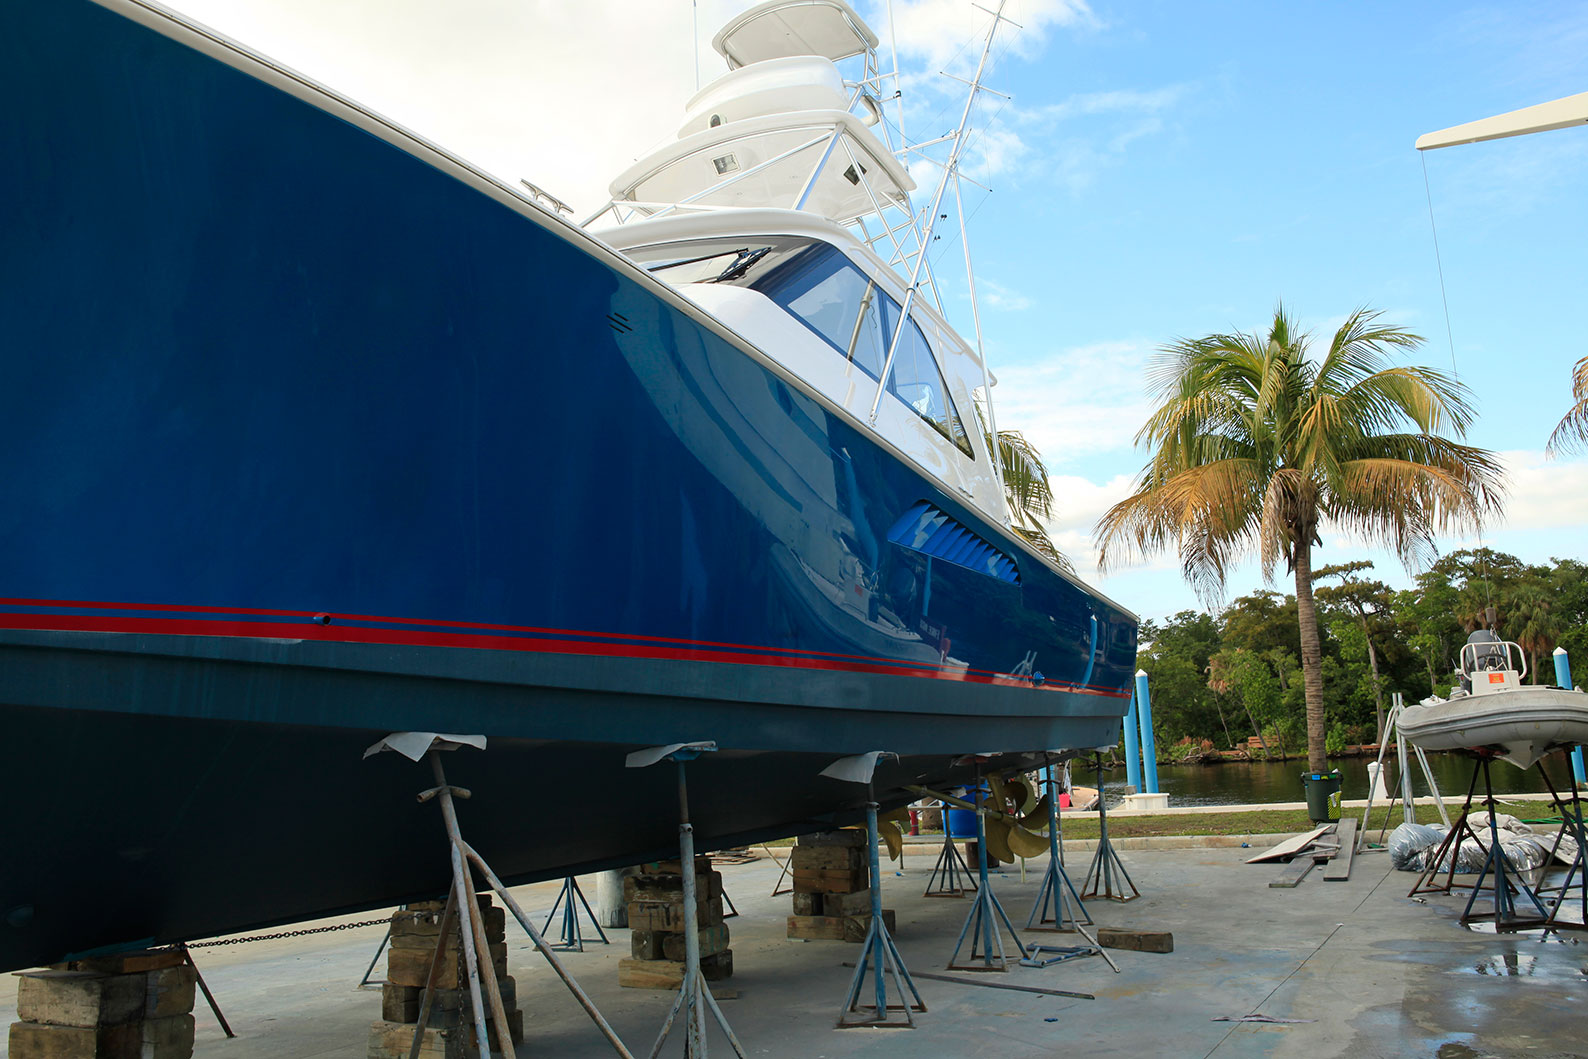 2012 4 Aces 52' Viking Motor Yacht